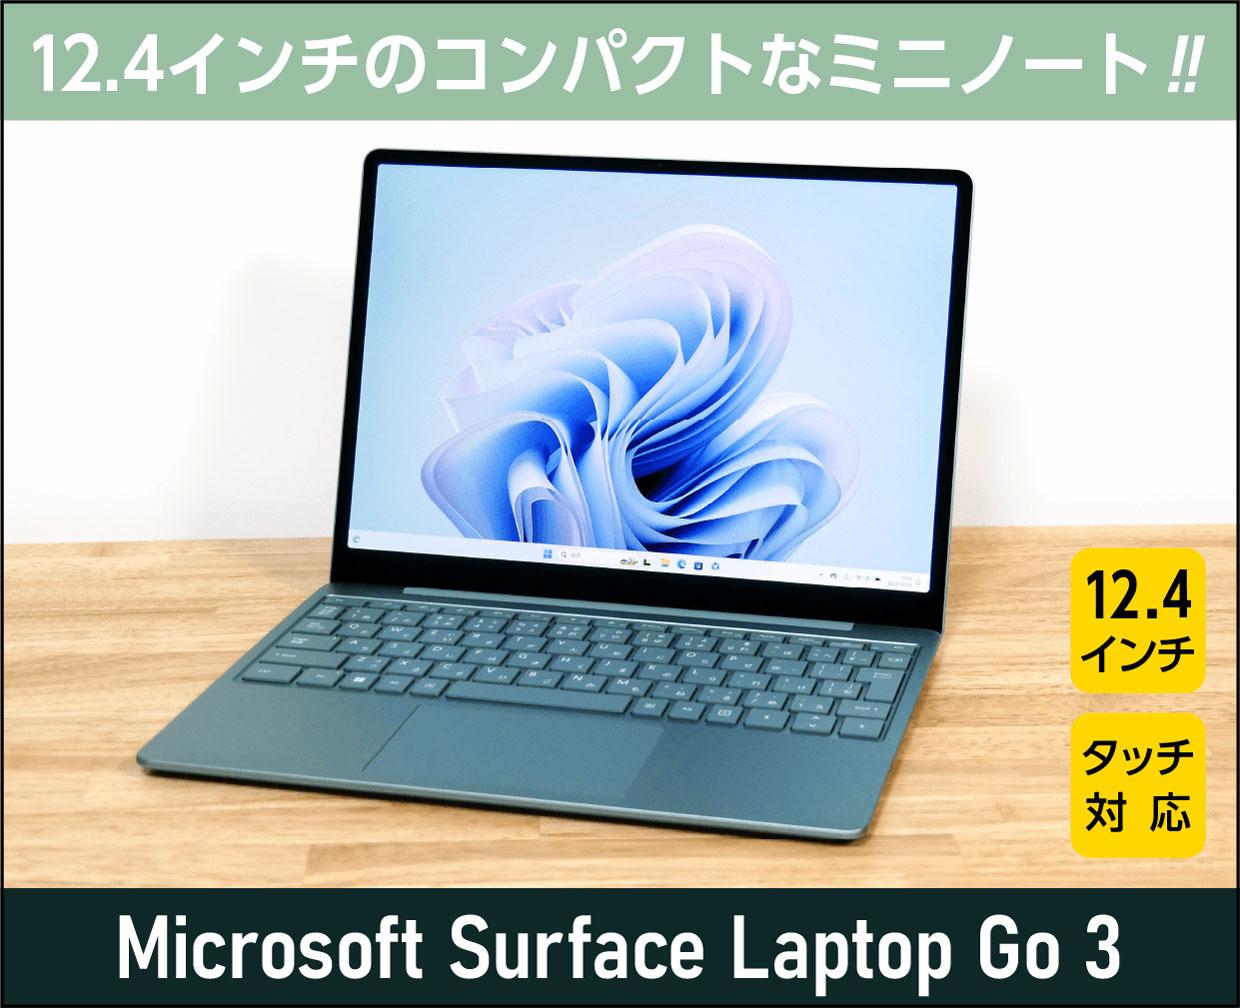 マイクロソフト Surface Laptop Go 3のメイン画像